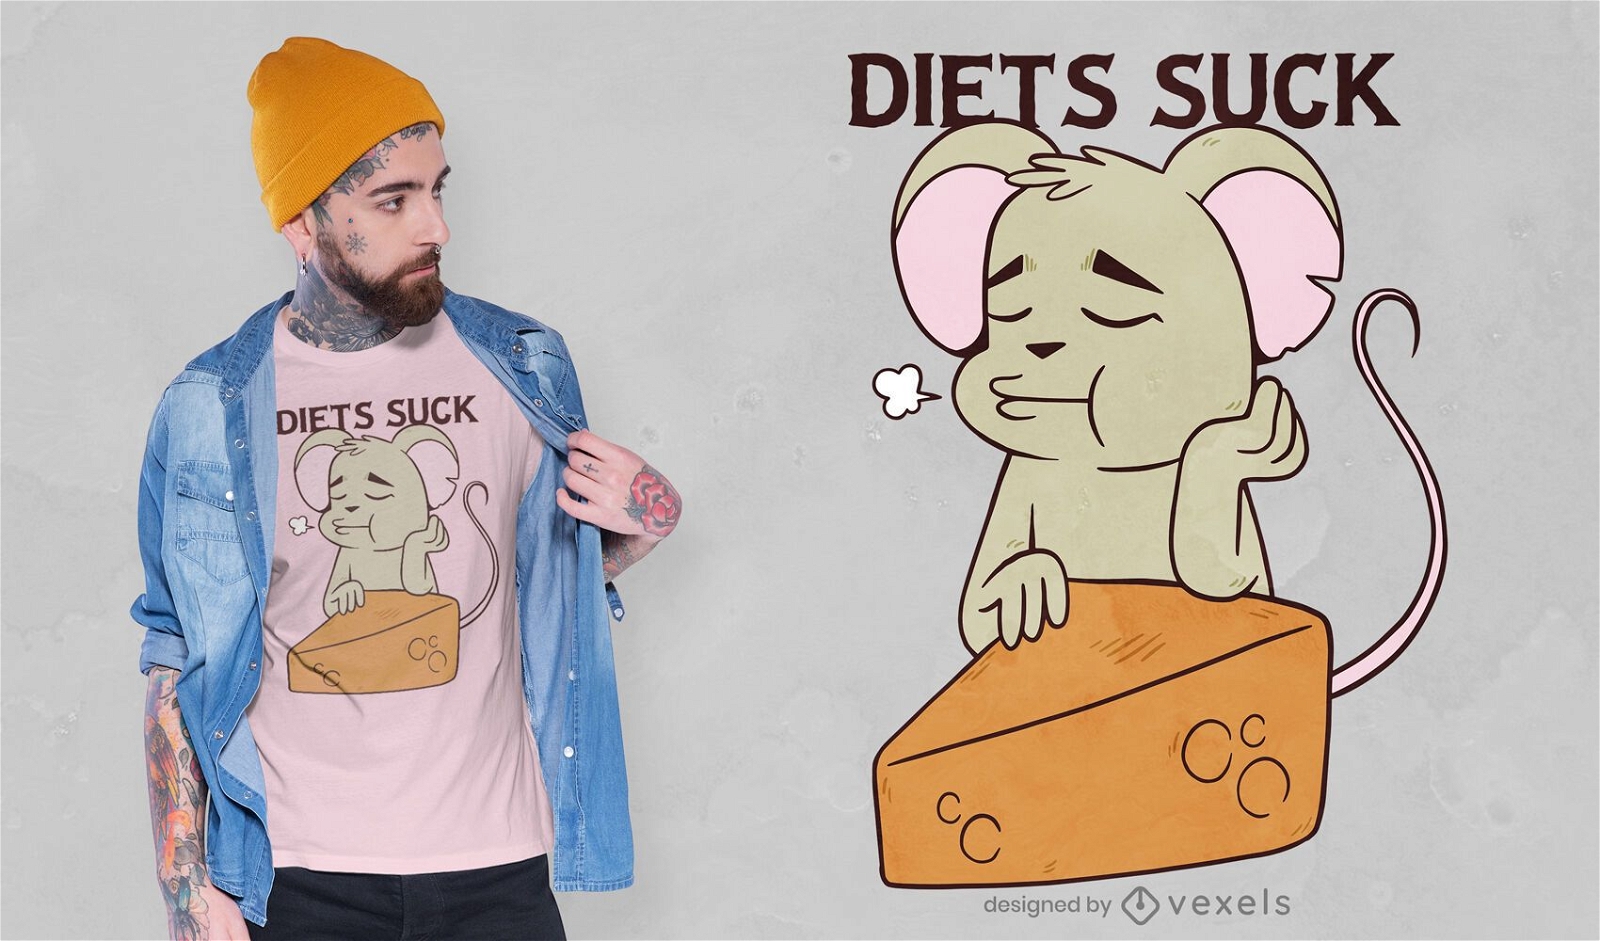 Mouse no design de camisetas diet